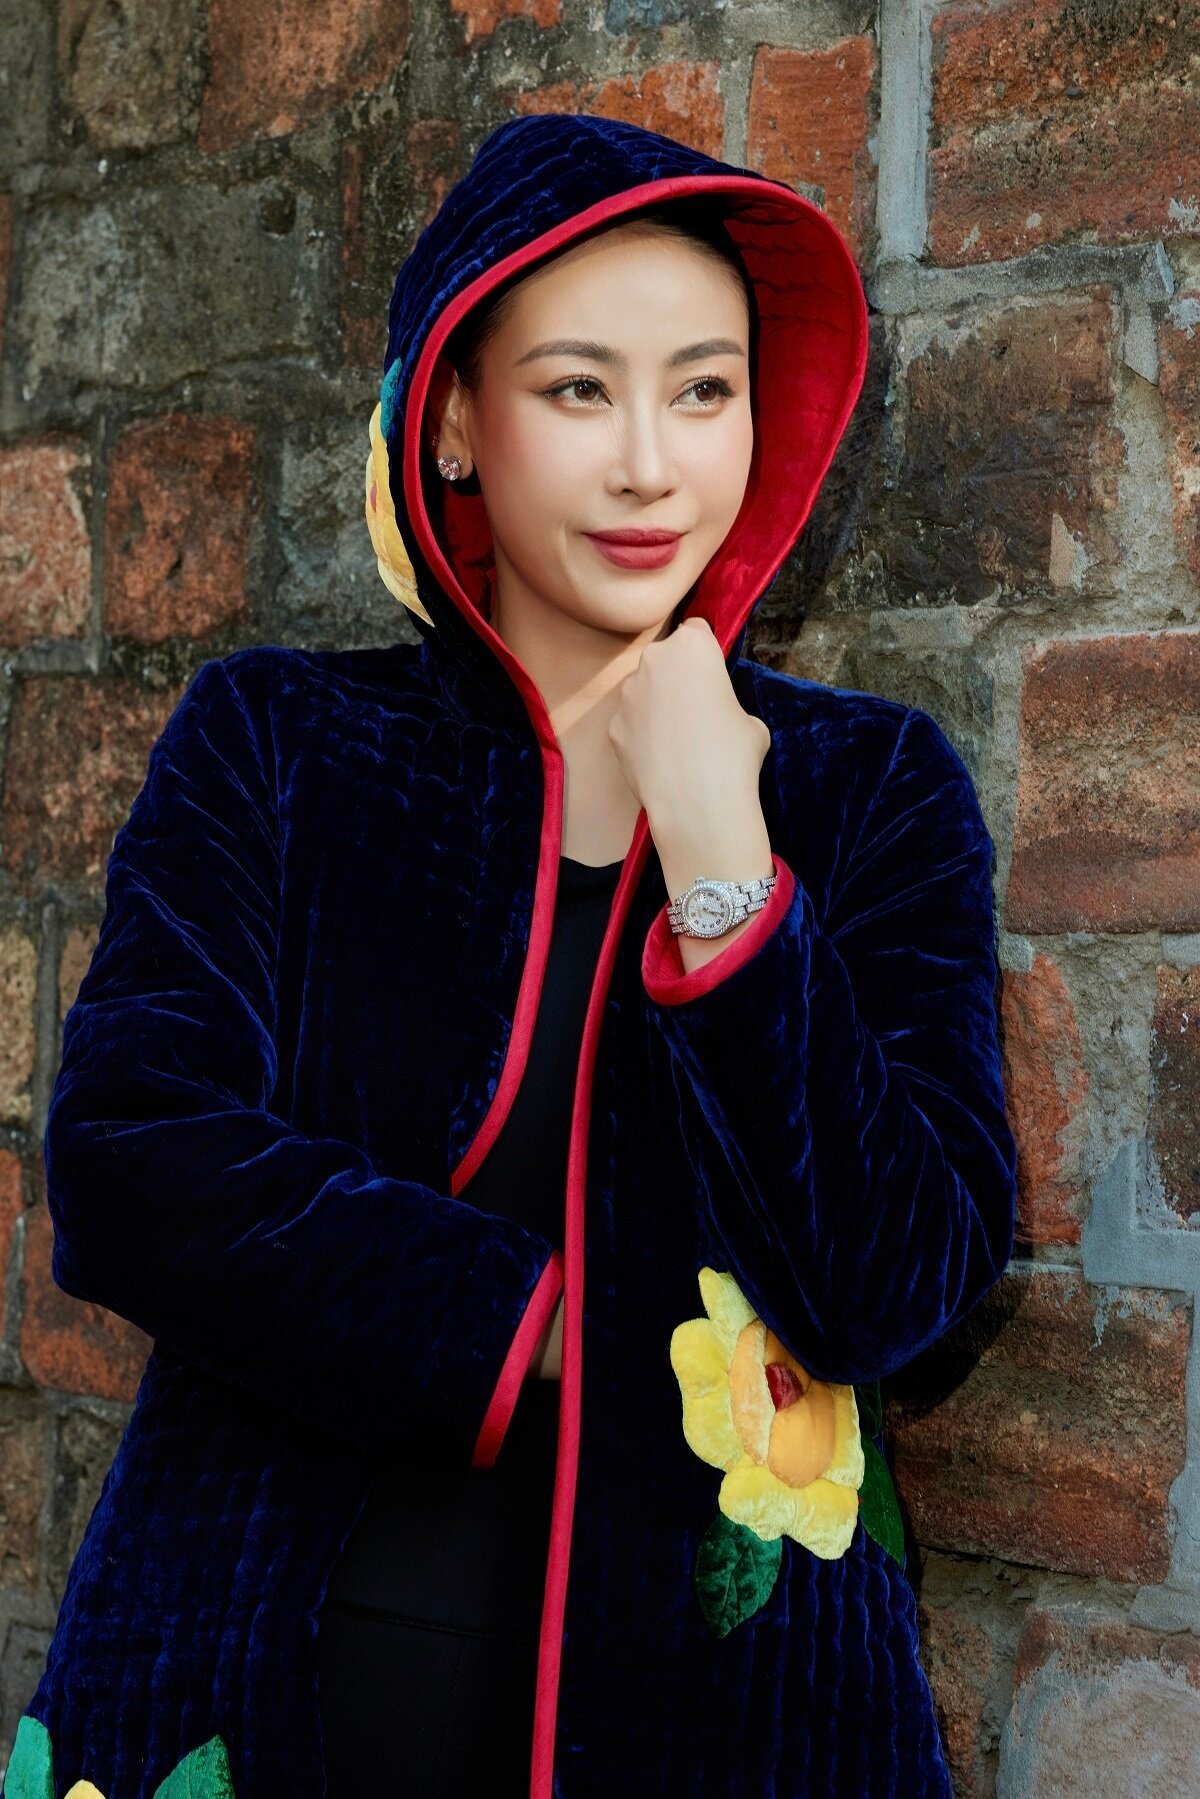 Hoa hậu Hà Kiều Anh sang trọng, quyến rũ với áo chần bông - 1